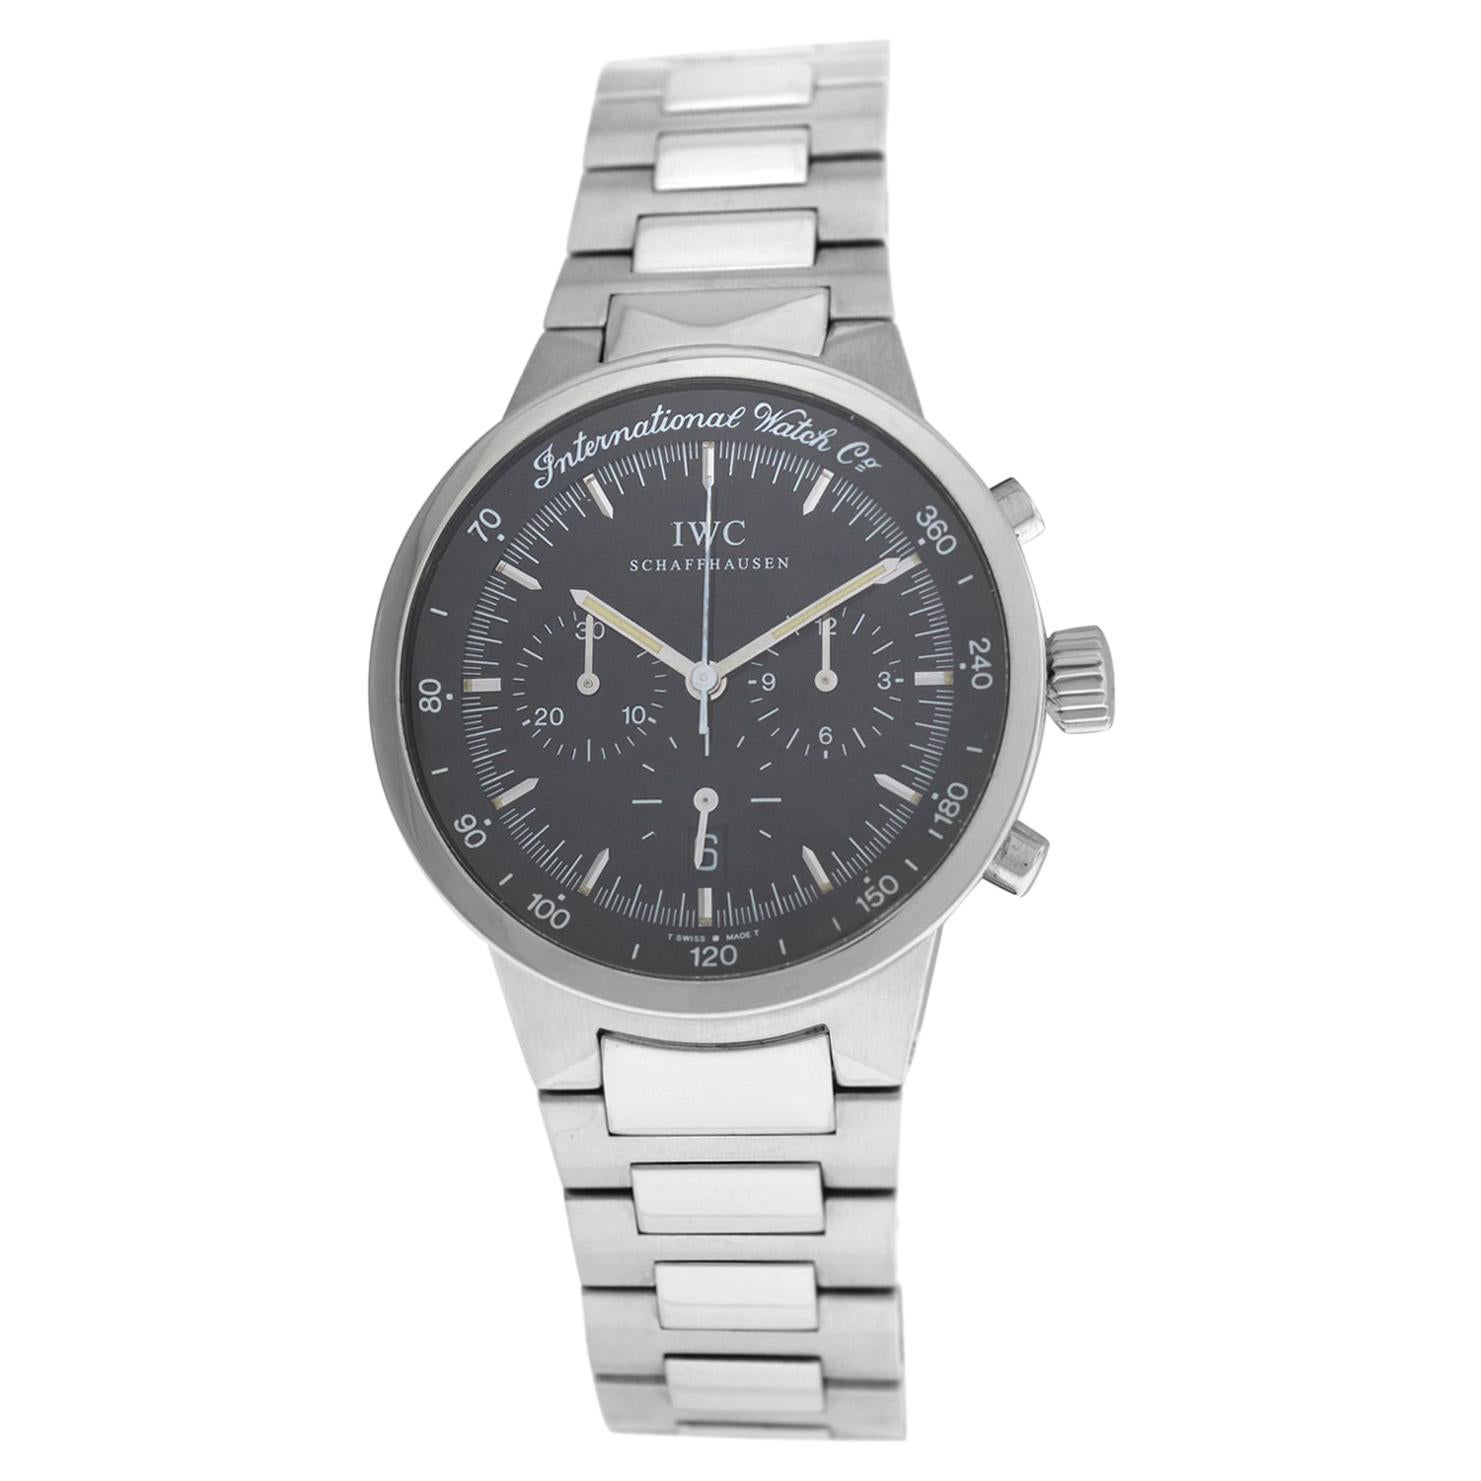 IWC Schaffhausen GST IW372702 Chronograph Date Stainless Steel Quartz Watch For Sale